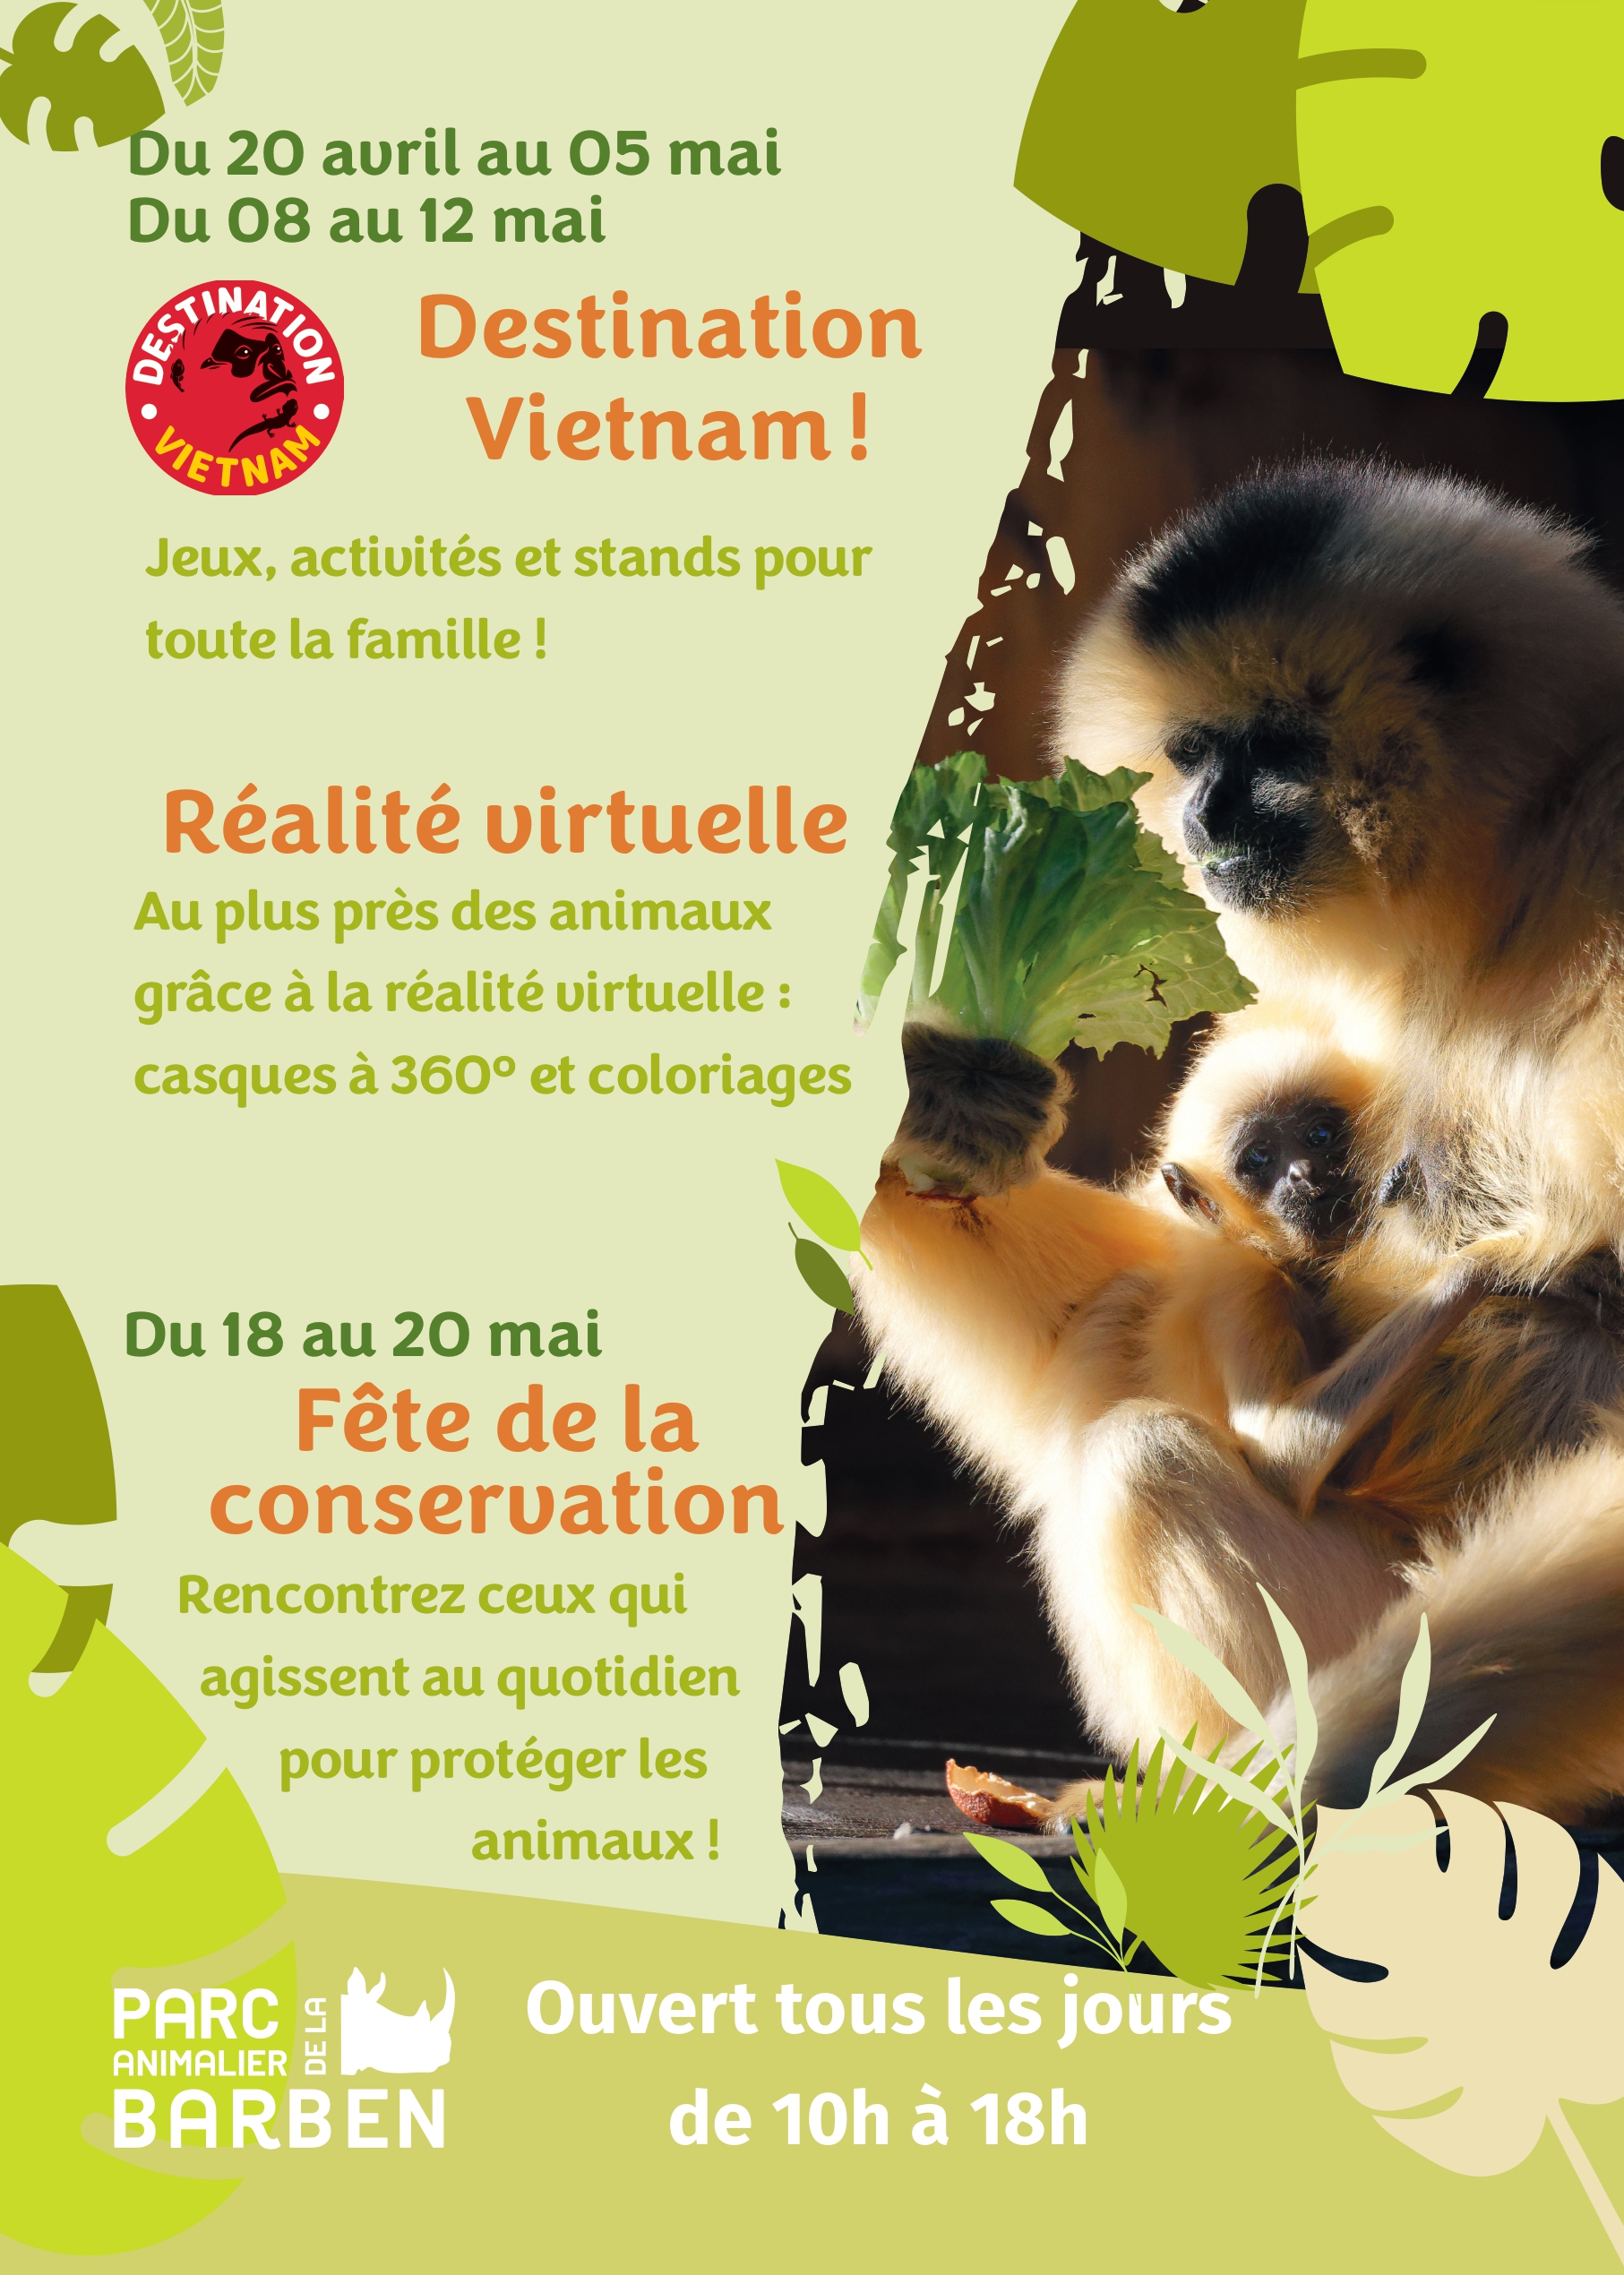 Destination Vietnam ! - Au parc animalier de La Barben